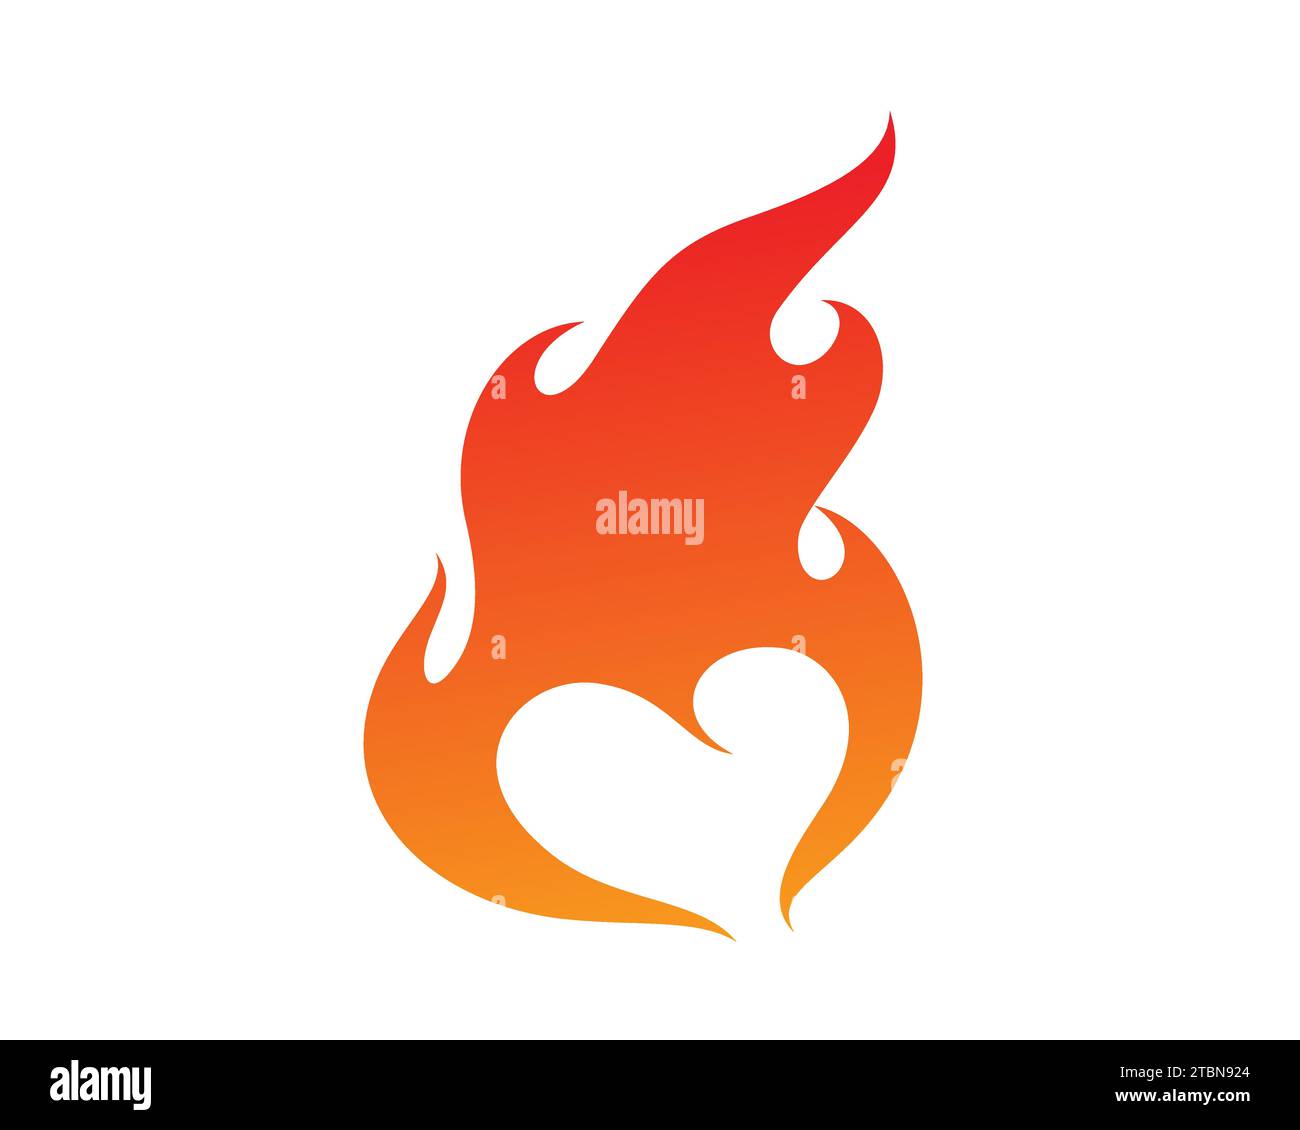 Liebes- und Herzsymbol kombiniert mit Verbrennungseffekt, visualisiert mit Silhouettenstil und gemessenem Verlauf Stock Vektor